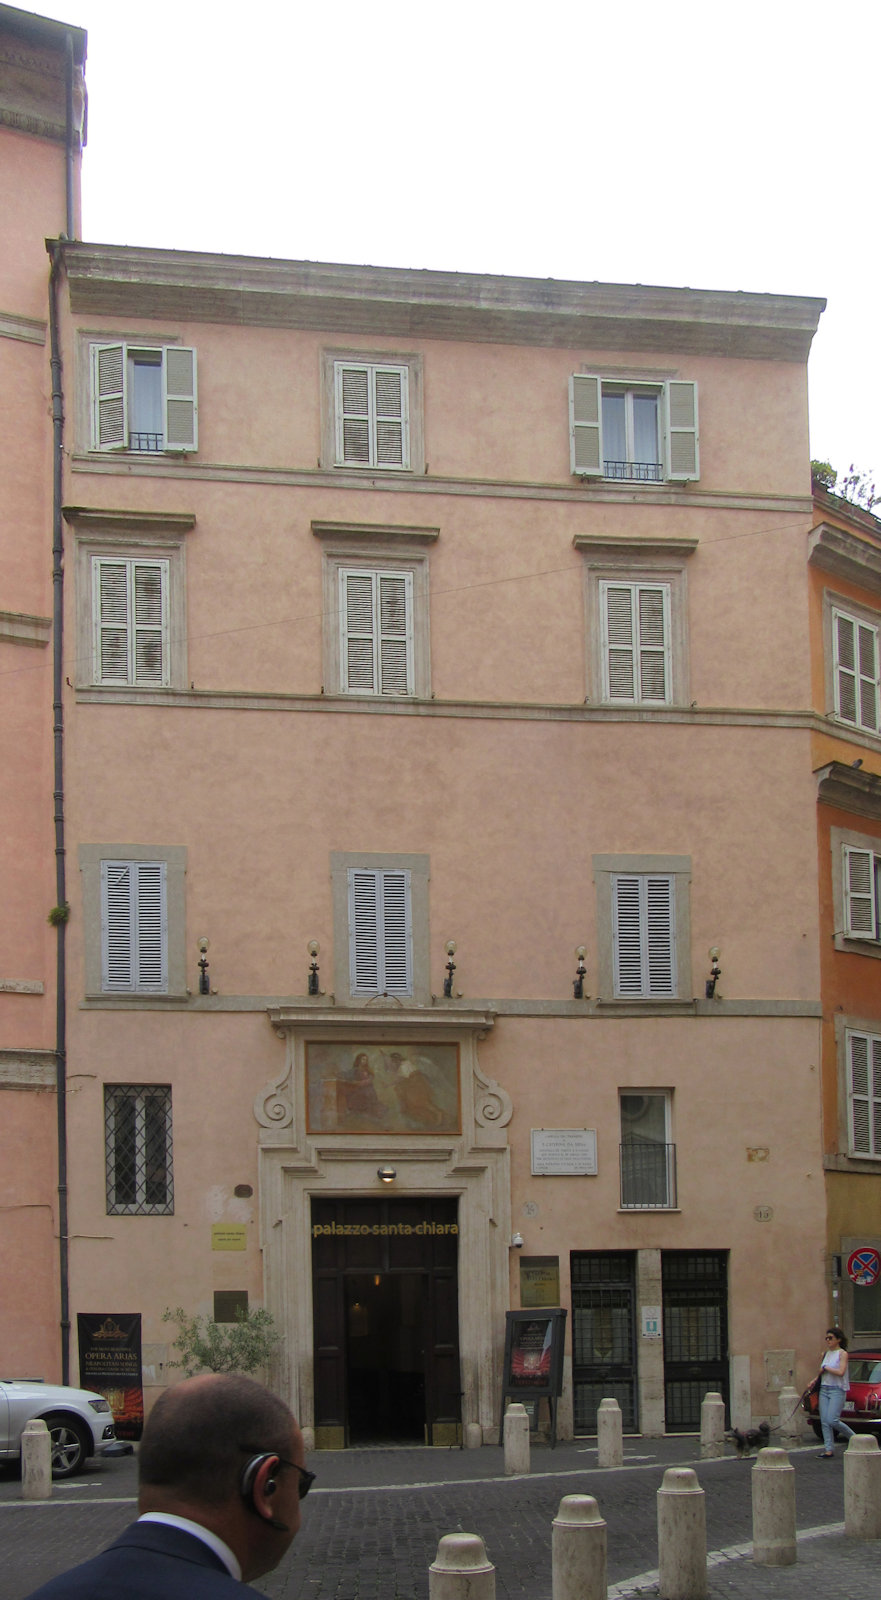 Palazzo Santa Chiara in Rom, in dem Katharina starb